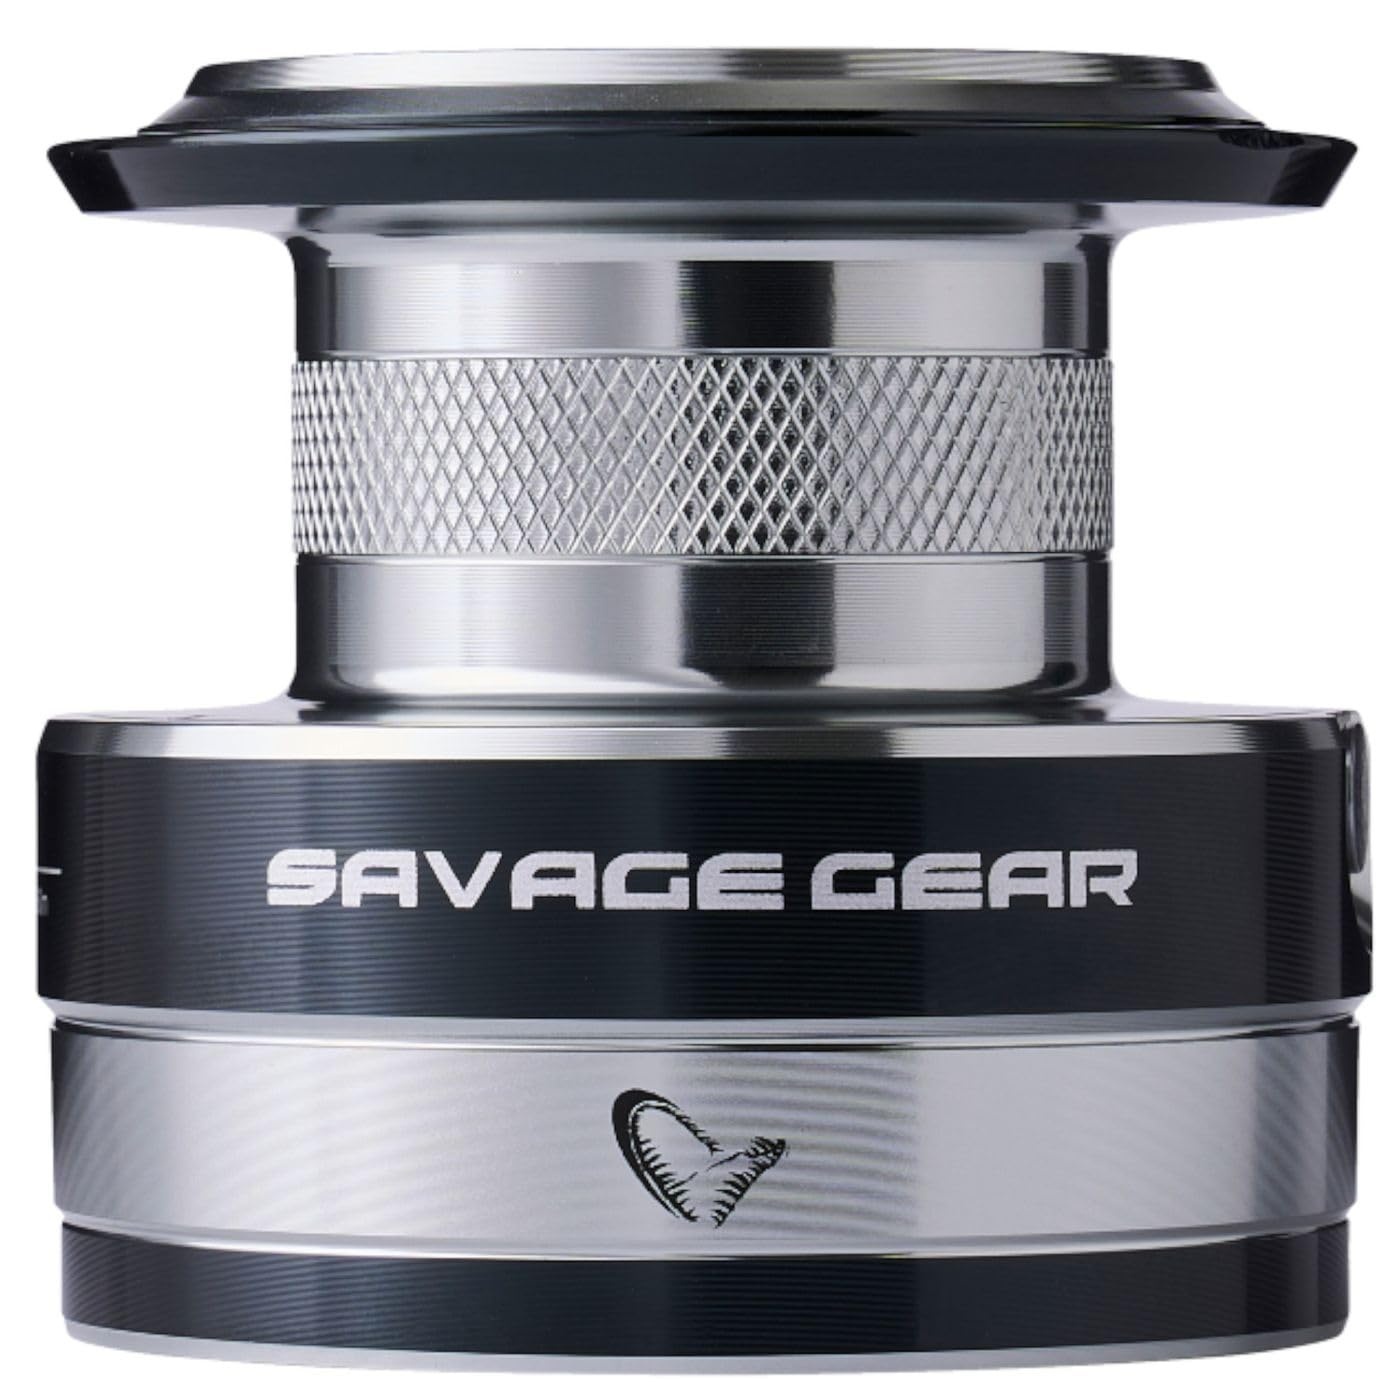 Savage Gear SGS8 Spare Spool 10000 FD - Ersatzspule für Rollen, Spule für Meeresrollen, Rollenspule, Reservespule